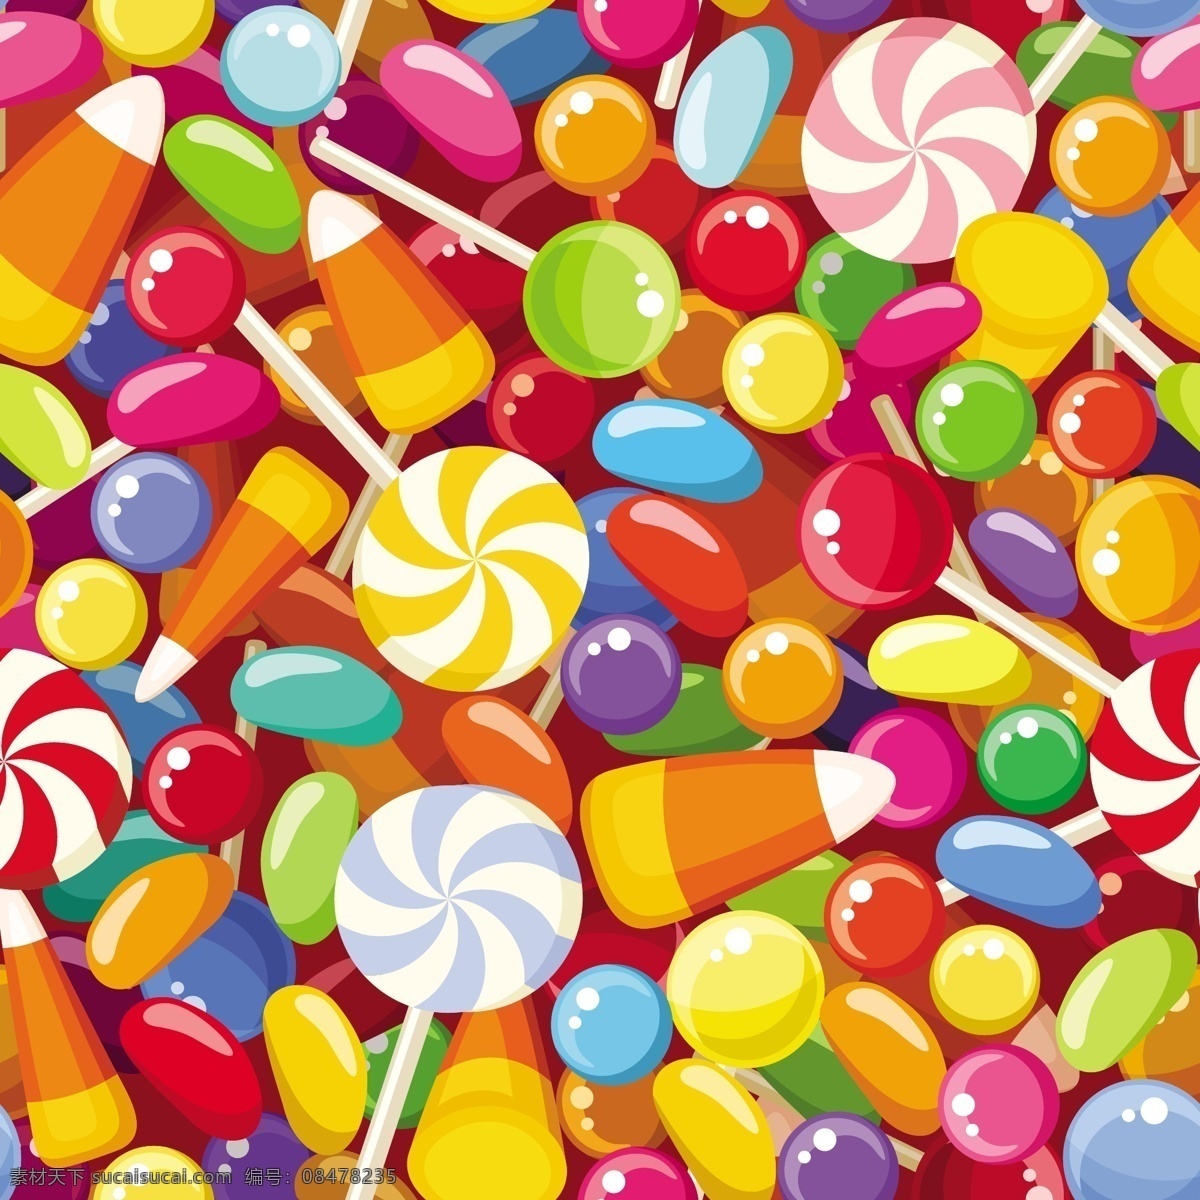 手绘 彩绘 糖果 矢量 棒棒糖 零食 棉花糖 巧克力 水彩 甜品 马卡龙 软糖 水彩糖果 手绘糖果 彩绘糖果 糖果矢量 红色